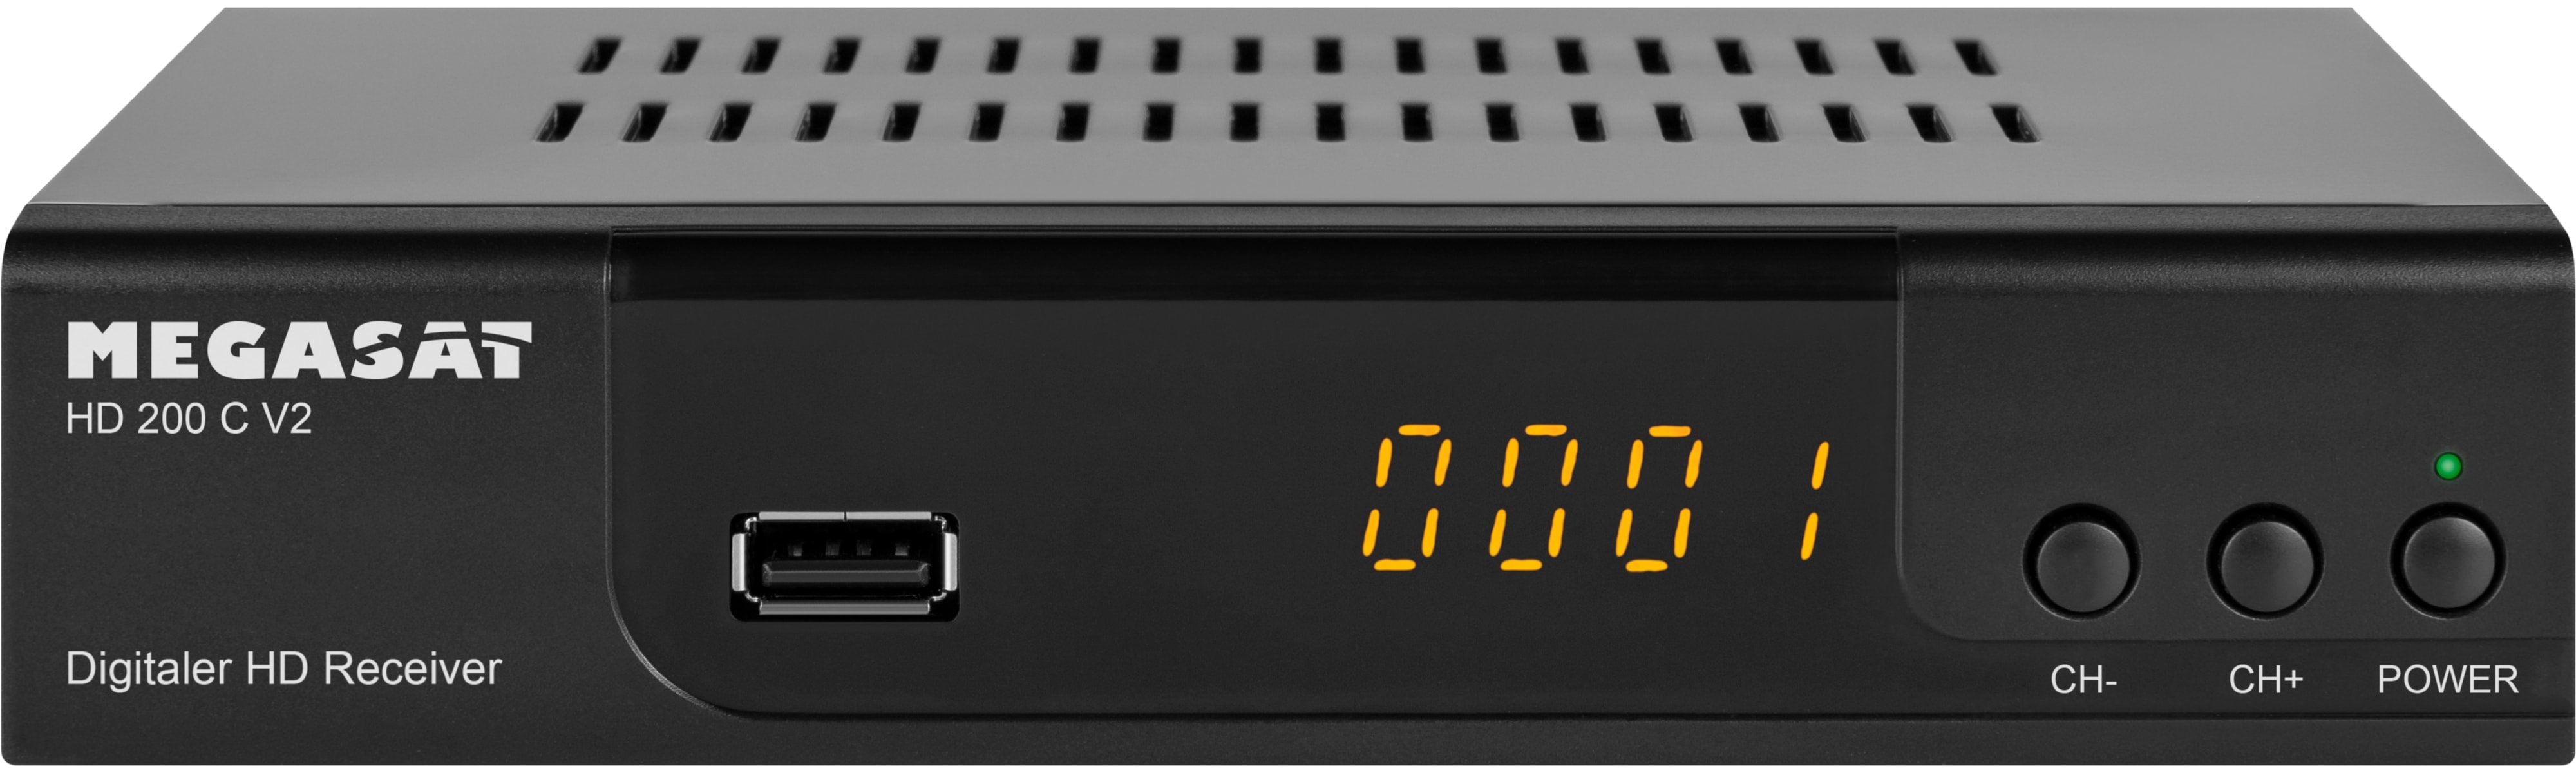 MEGASAT Receiver HD 200C V2, DVB-C, HDTV, S/PDIF